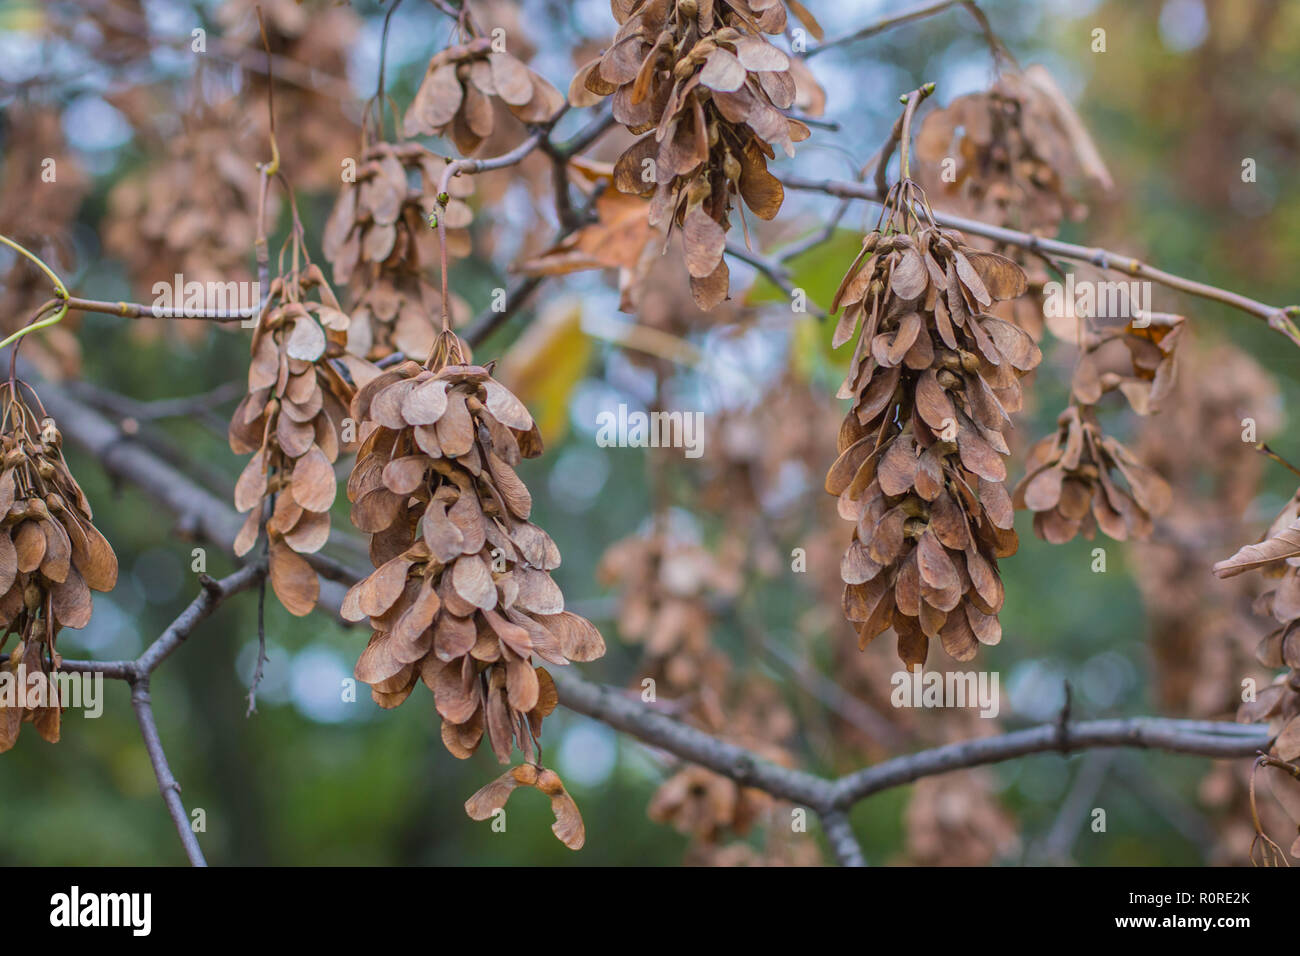 L'érable sycomore Acer pseudoplatanus brown / fruits secs sur la branche Banque D'Images